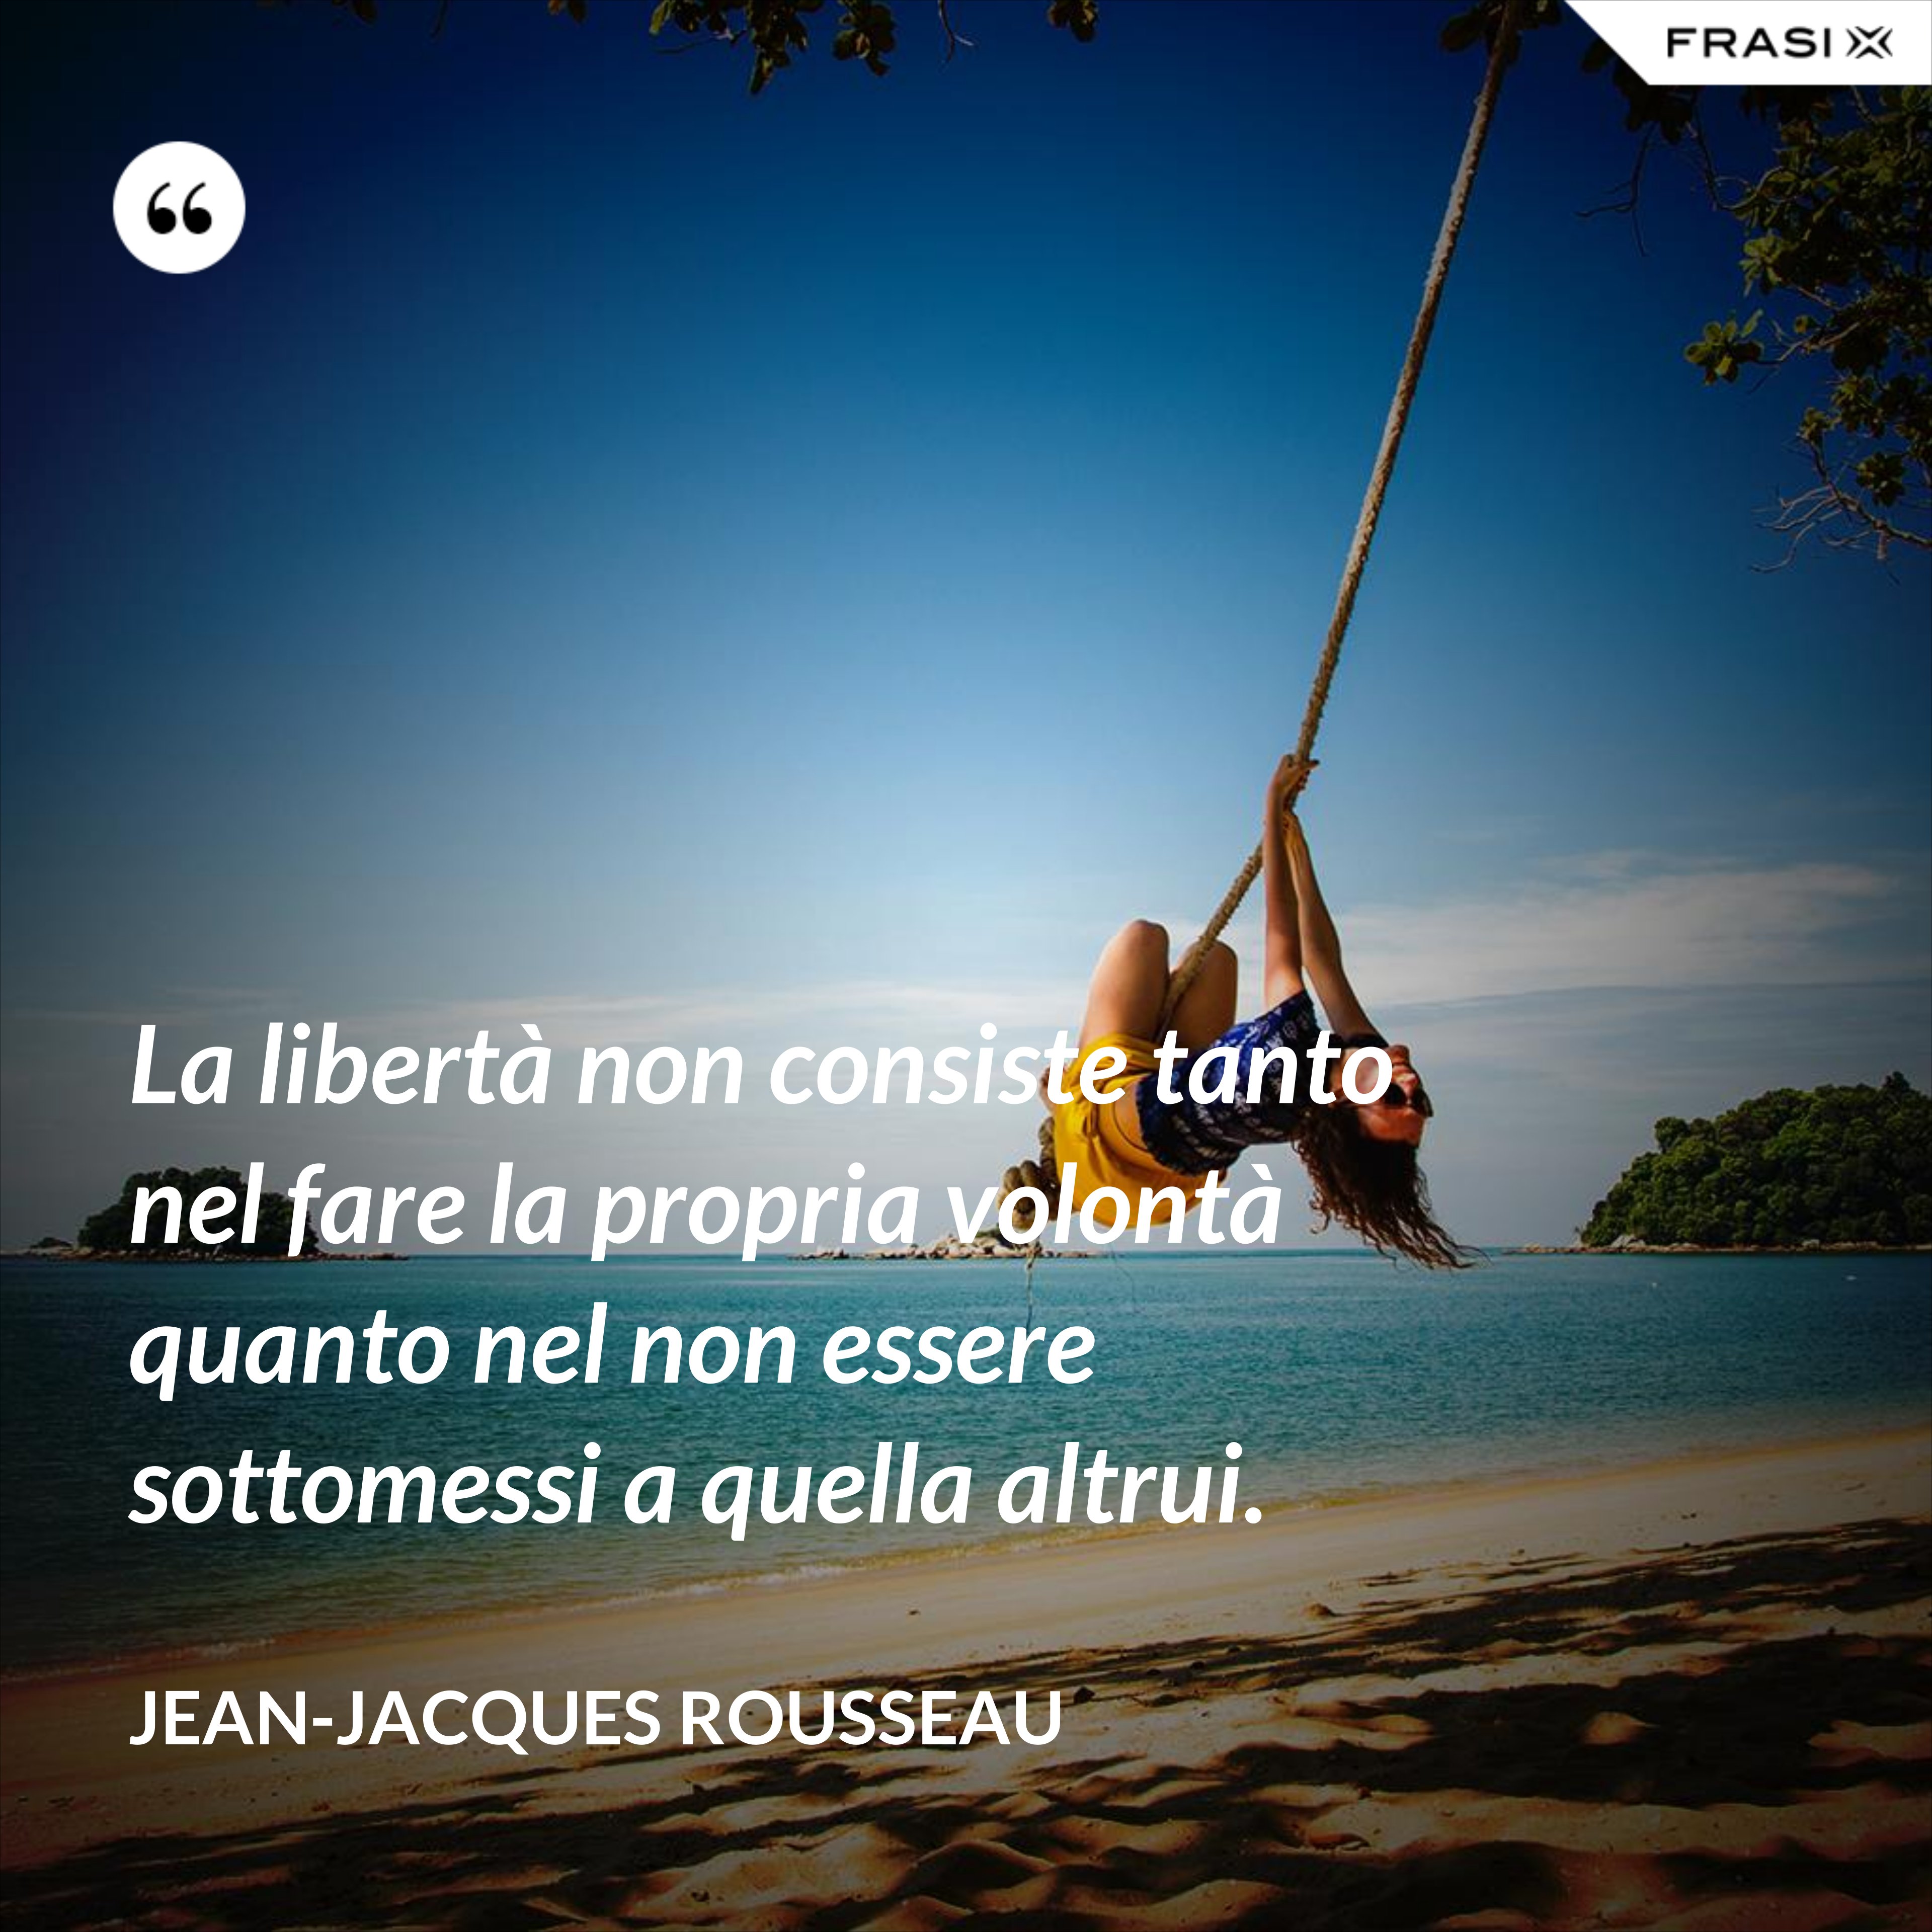 La libertà non consiste tanto nel fare la propria volontà quanto nel non essere sottomessi a quella altrui. - Jean-Jacques Rousseau